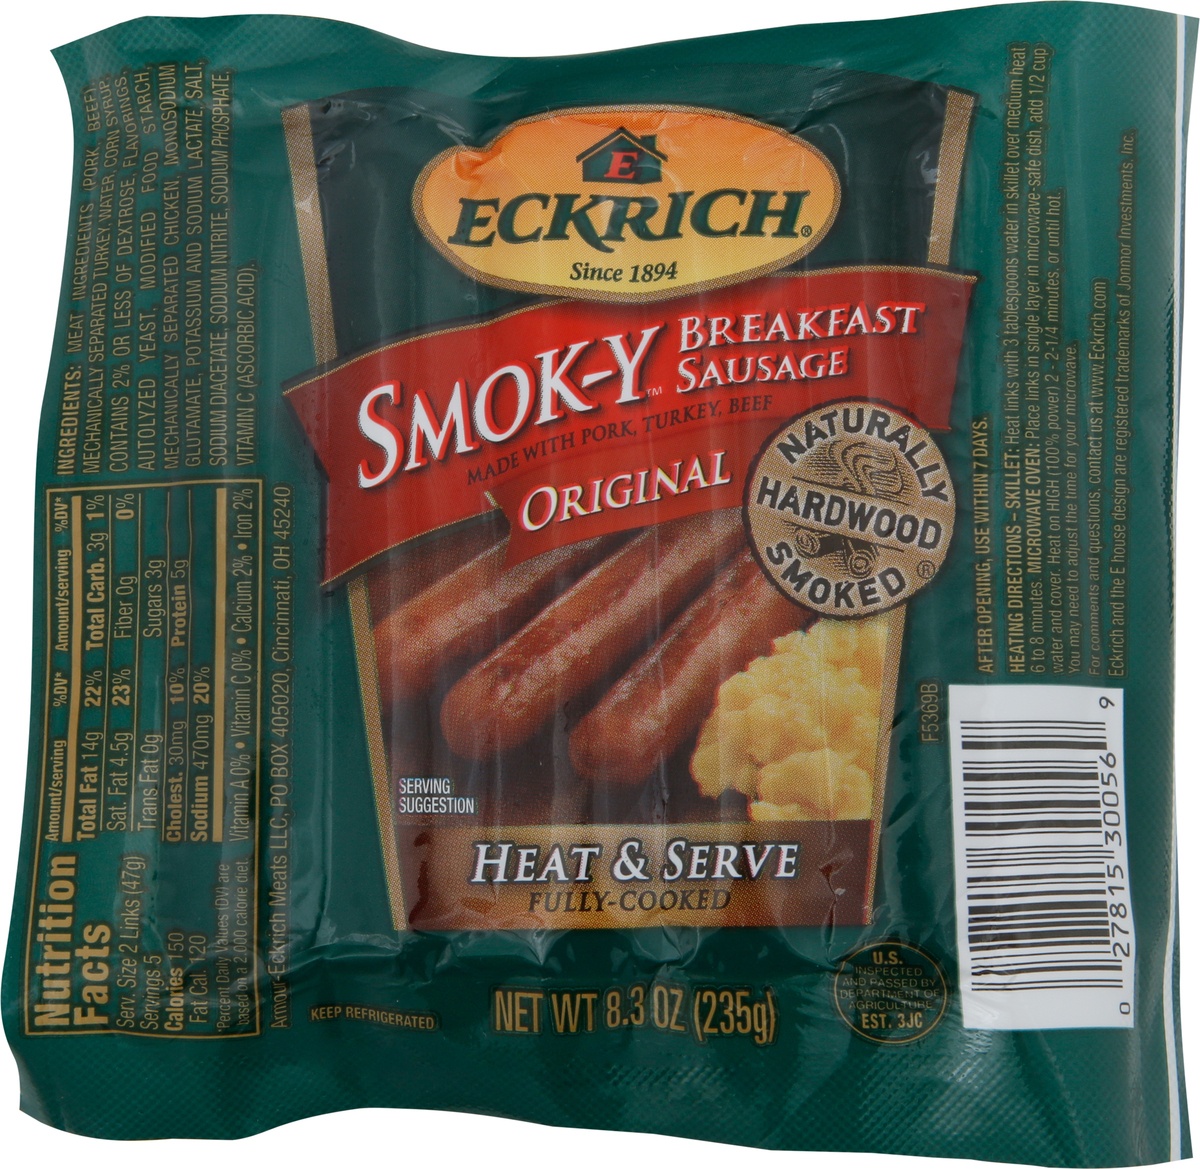 slide 4 of 5, Eckrich Smok-Y Original Breakfast Sausage, 8.3 oz